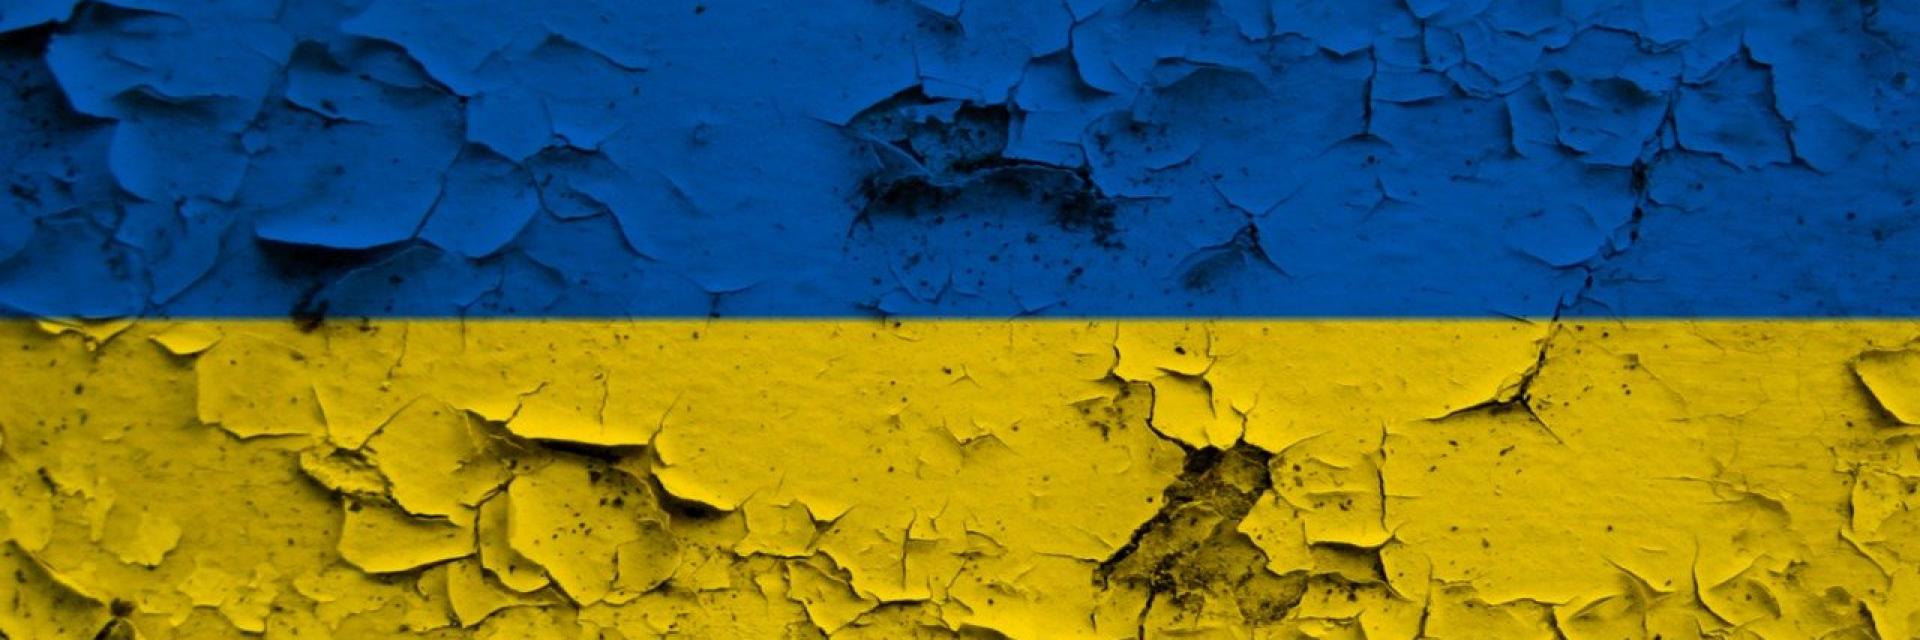 ukraine-flag-gf42b9713c_1280